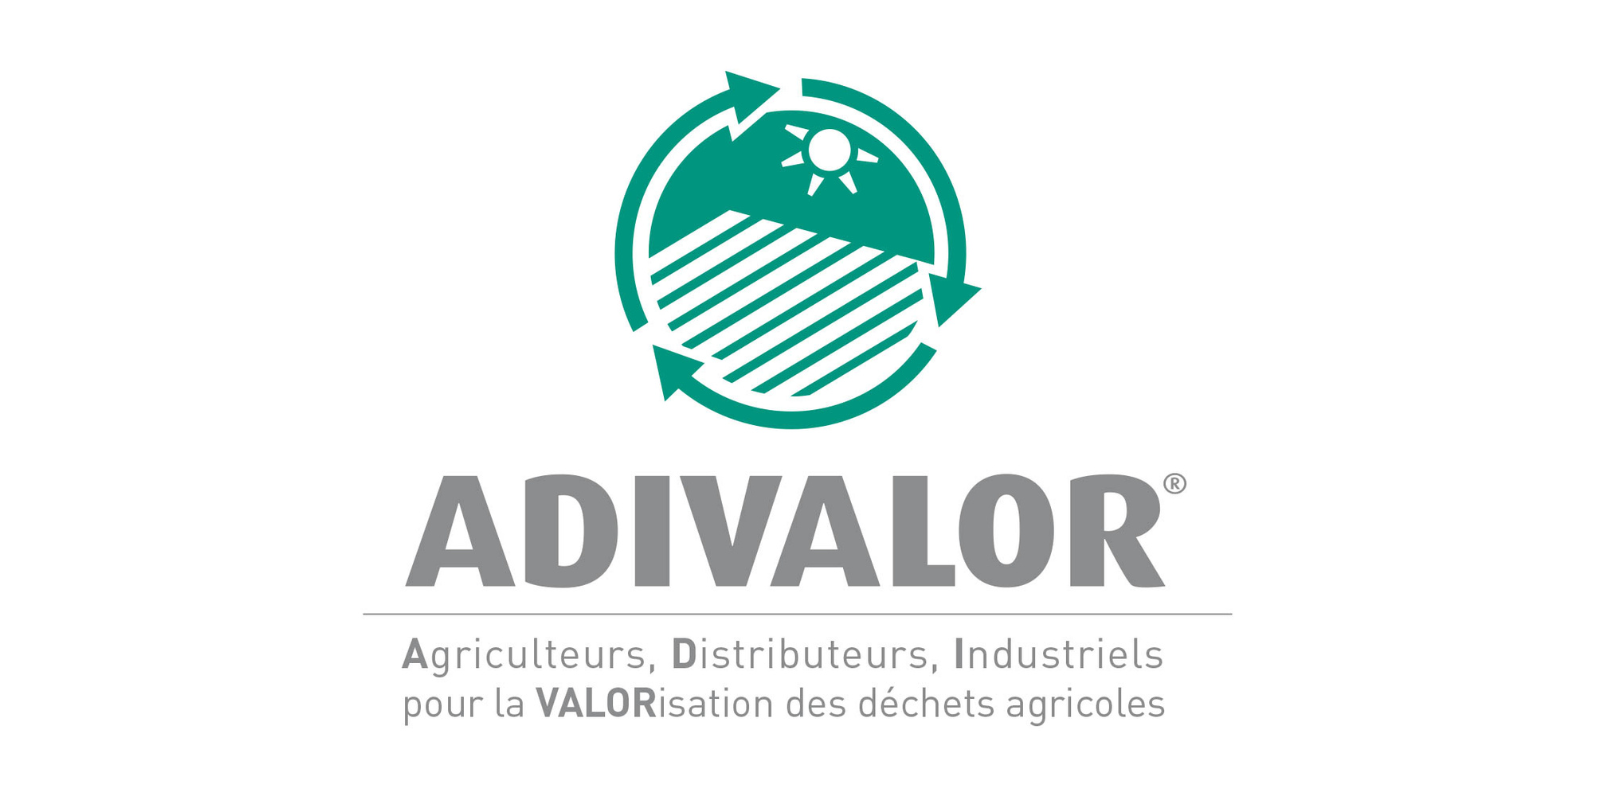 A.D.I.VALOR accueille 3 nouveaux collaborateurs et renforce ses équipes